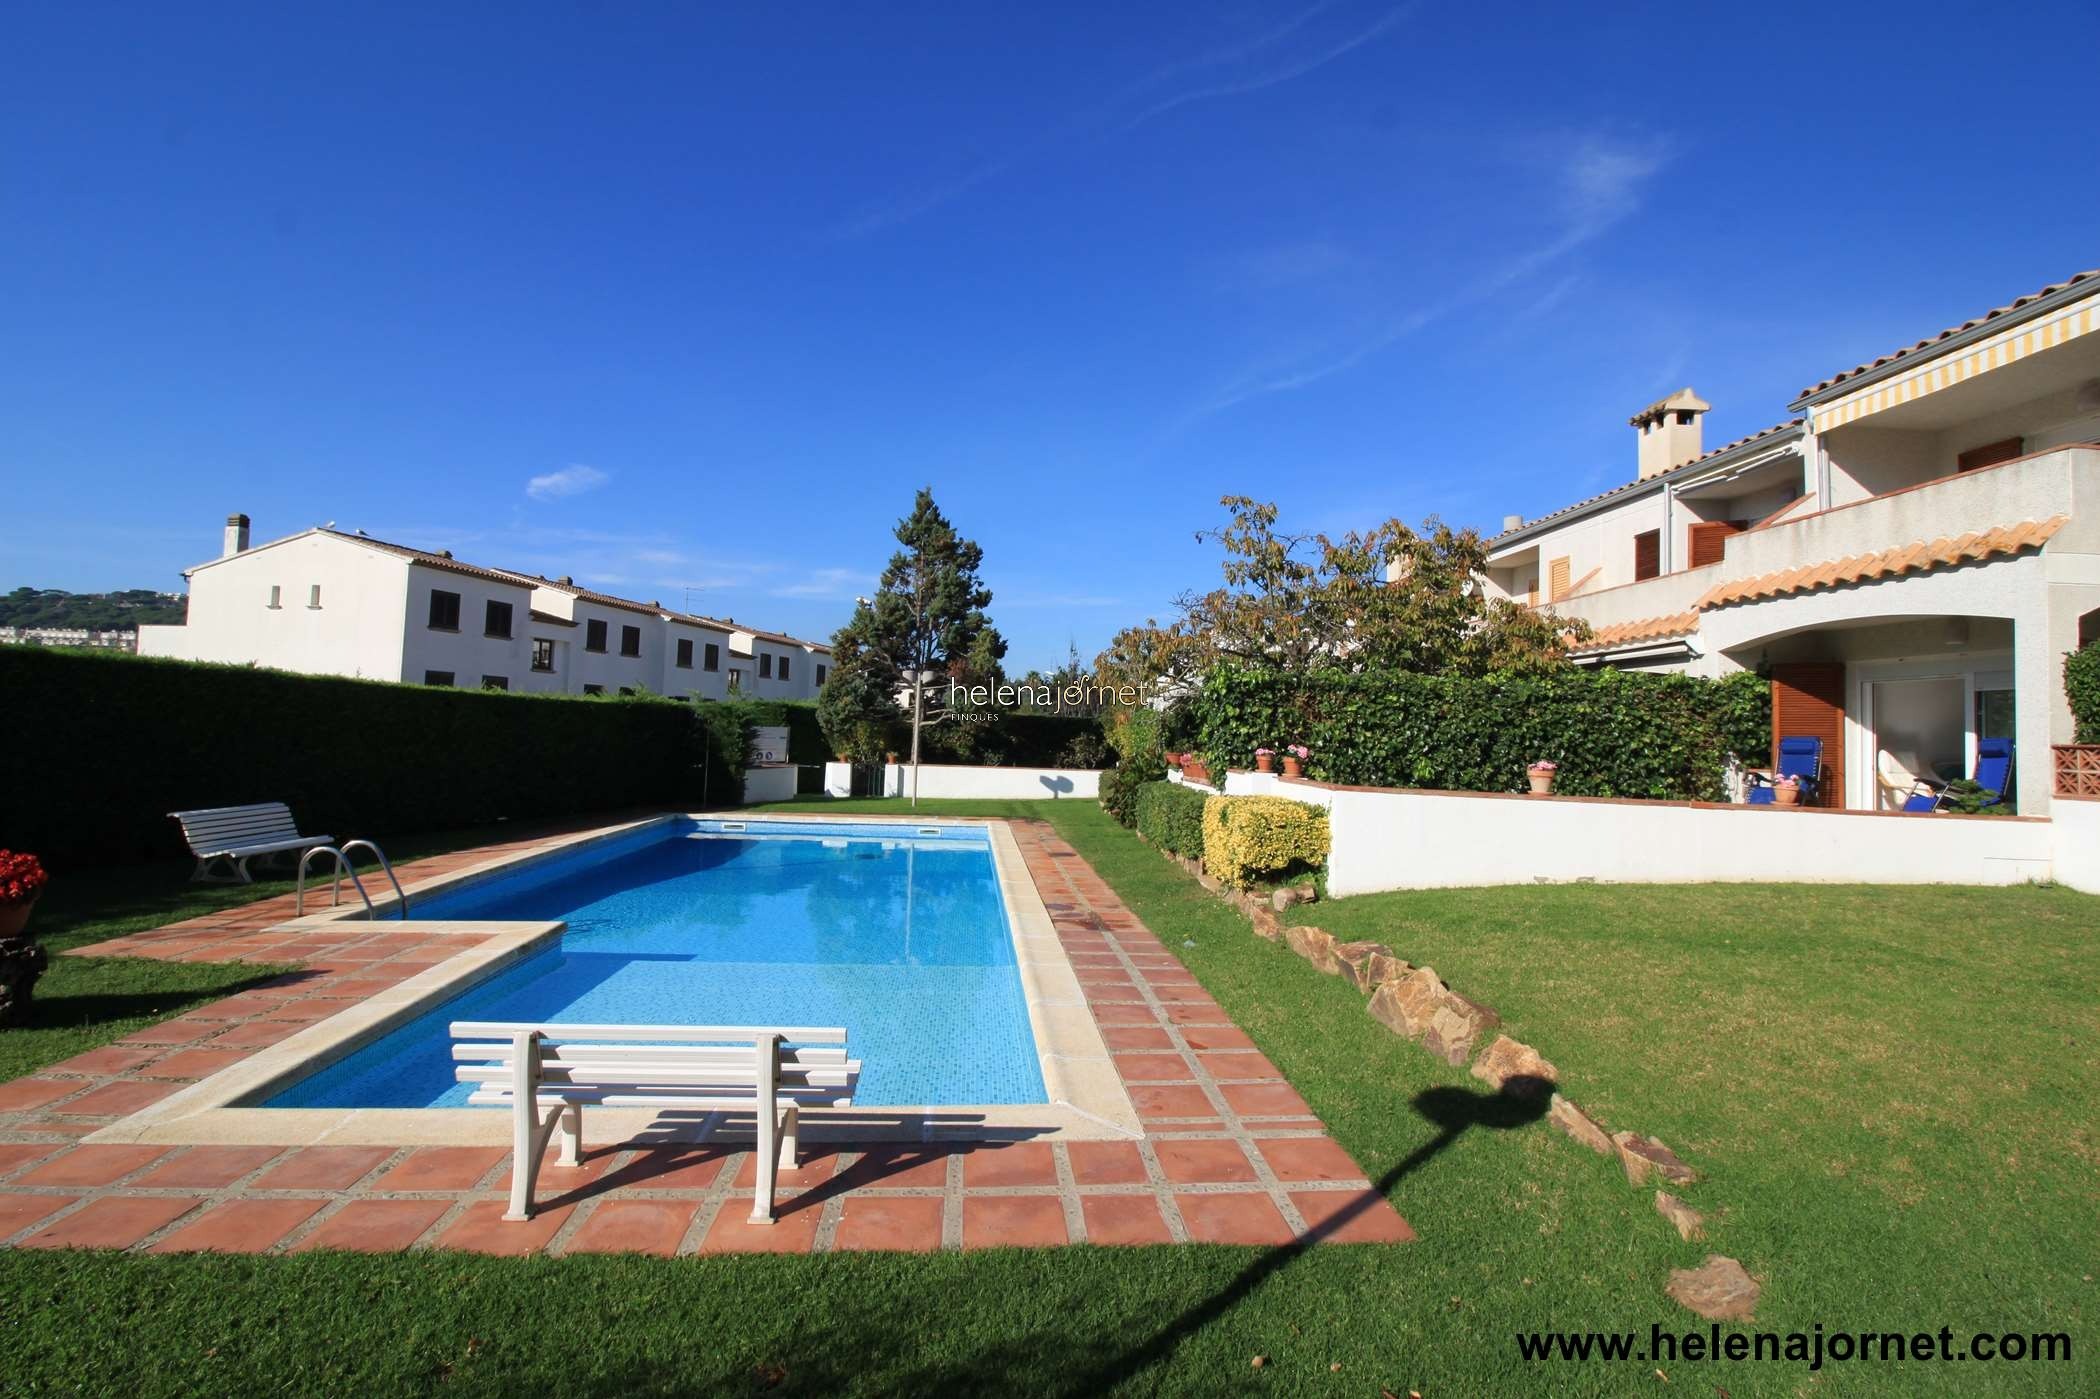 Fantàstica casa  parellada situada a S’Agaró amb piscina comunitària - 70067 Corrons